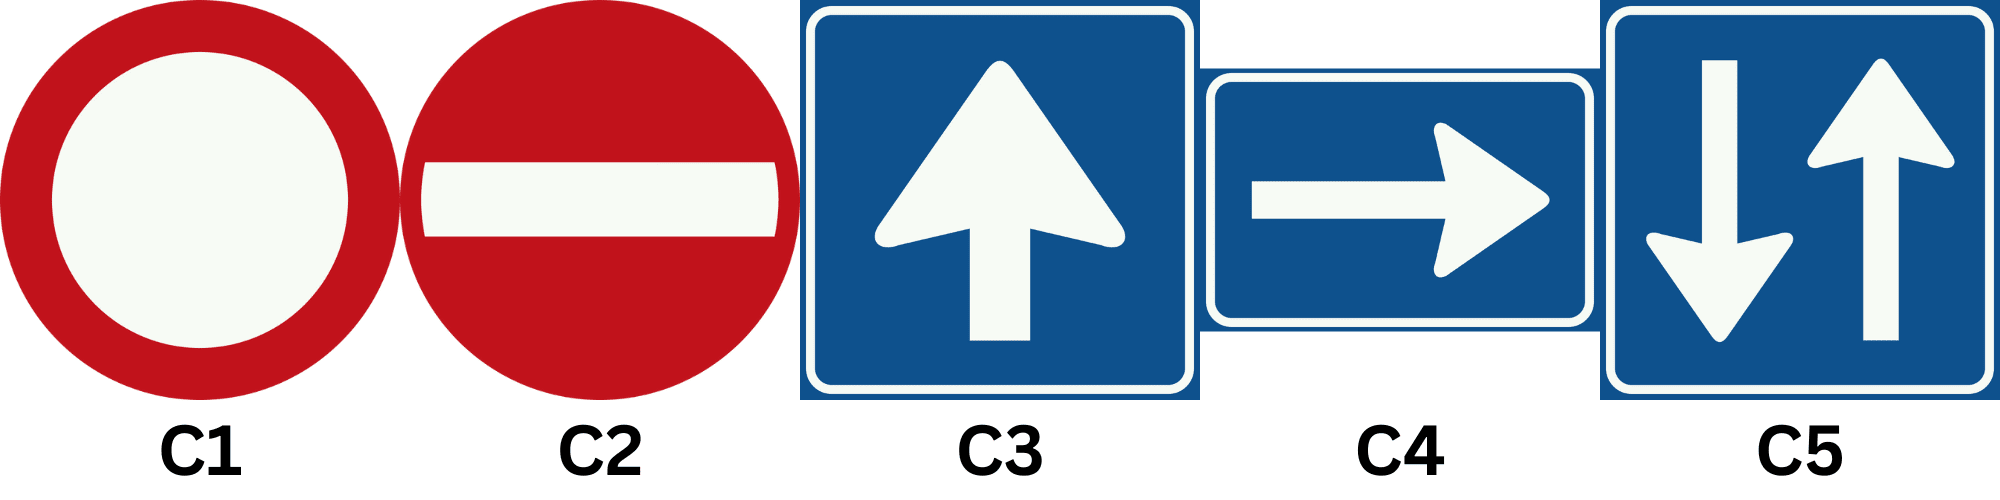 Verkeersborden C1, C2, C3, C4 en C5 voorrangsborden